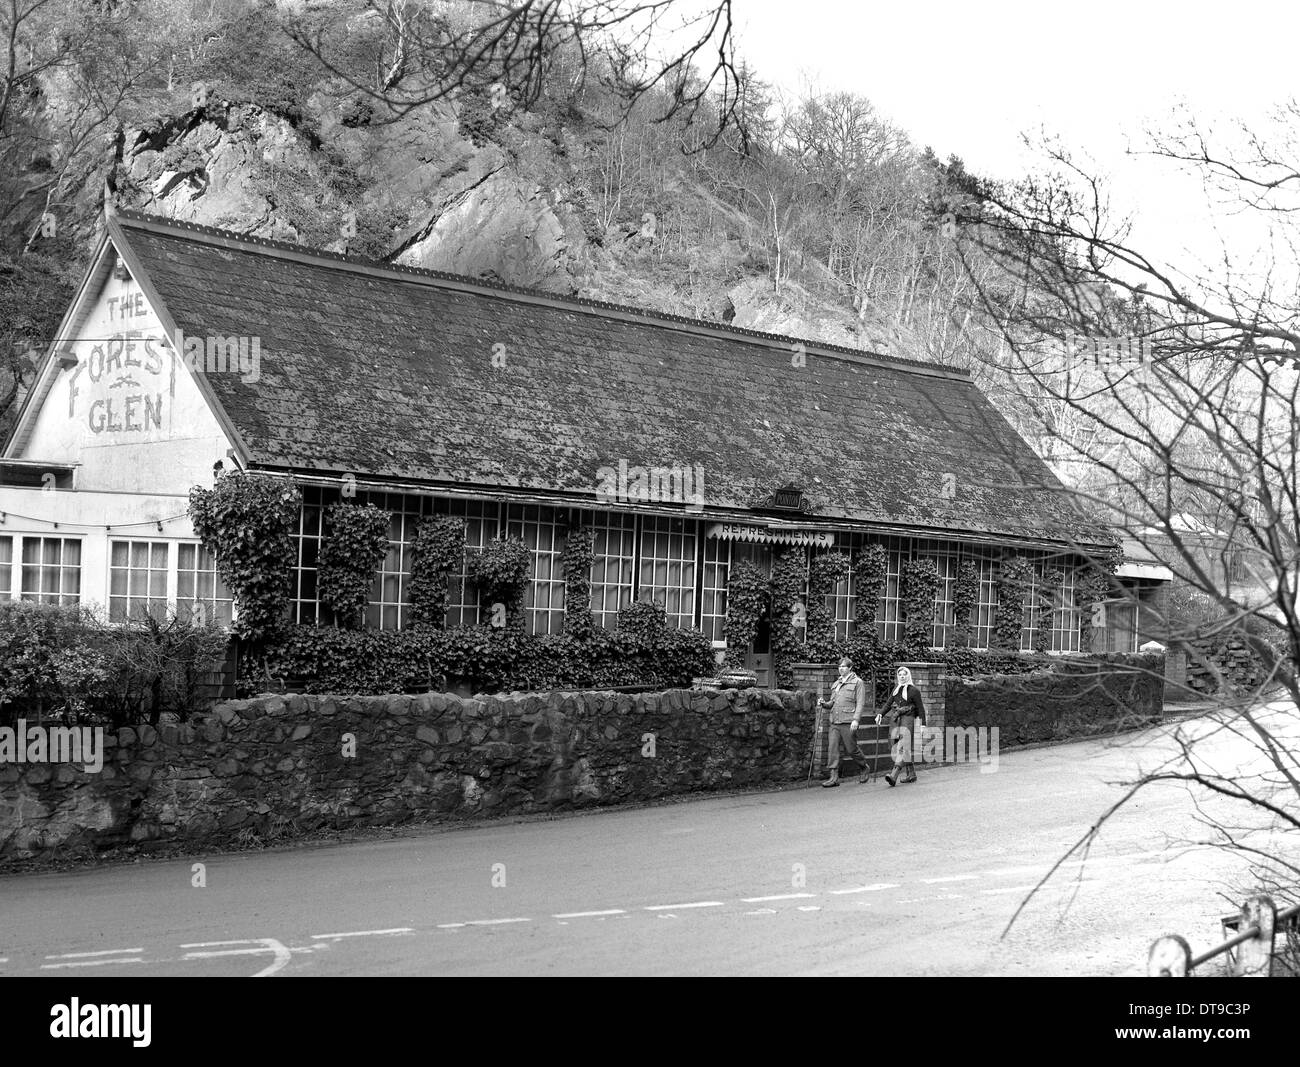 La foresta Glen Pavilion inaugurato nel 1889 da Enrico Pointon alla base della collina Wrekin in Wellington Shropshire REGNO UNITO. Foto Stock